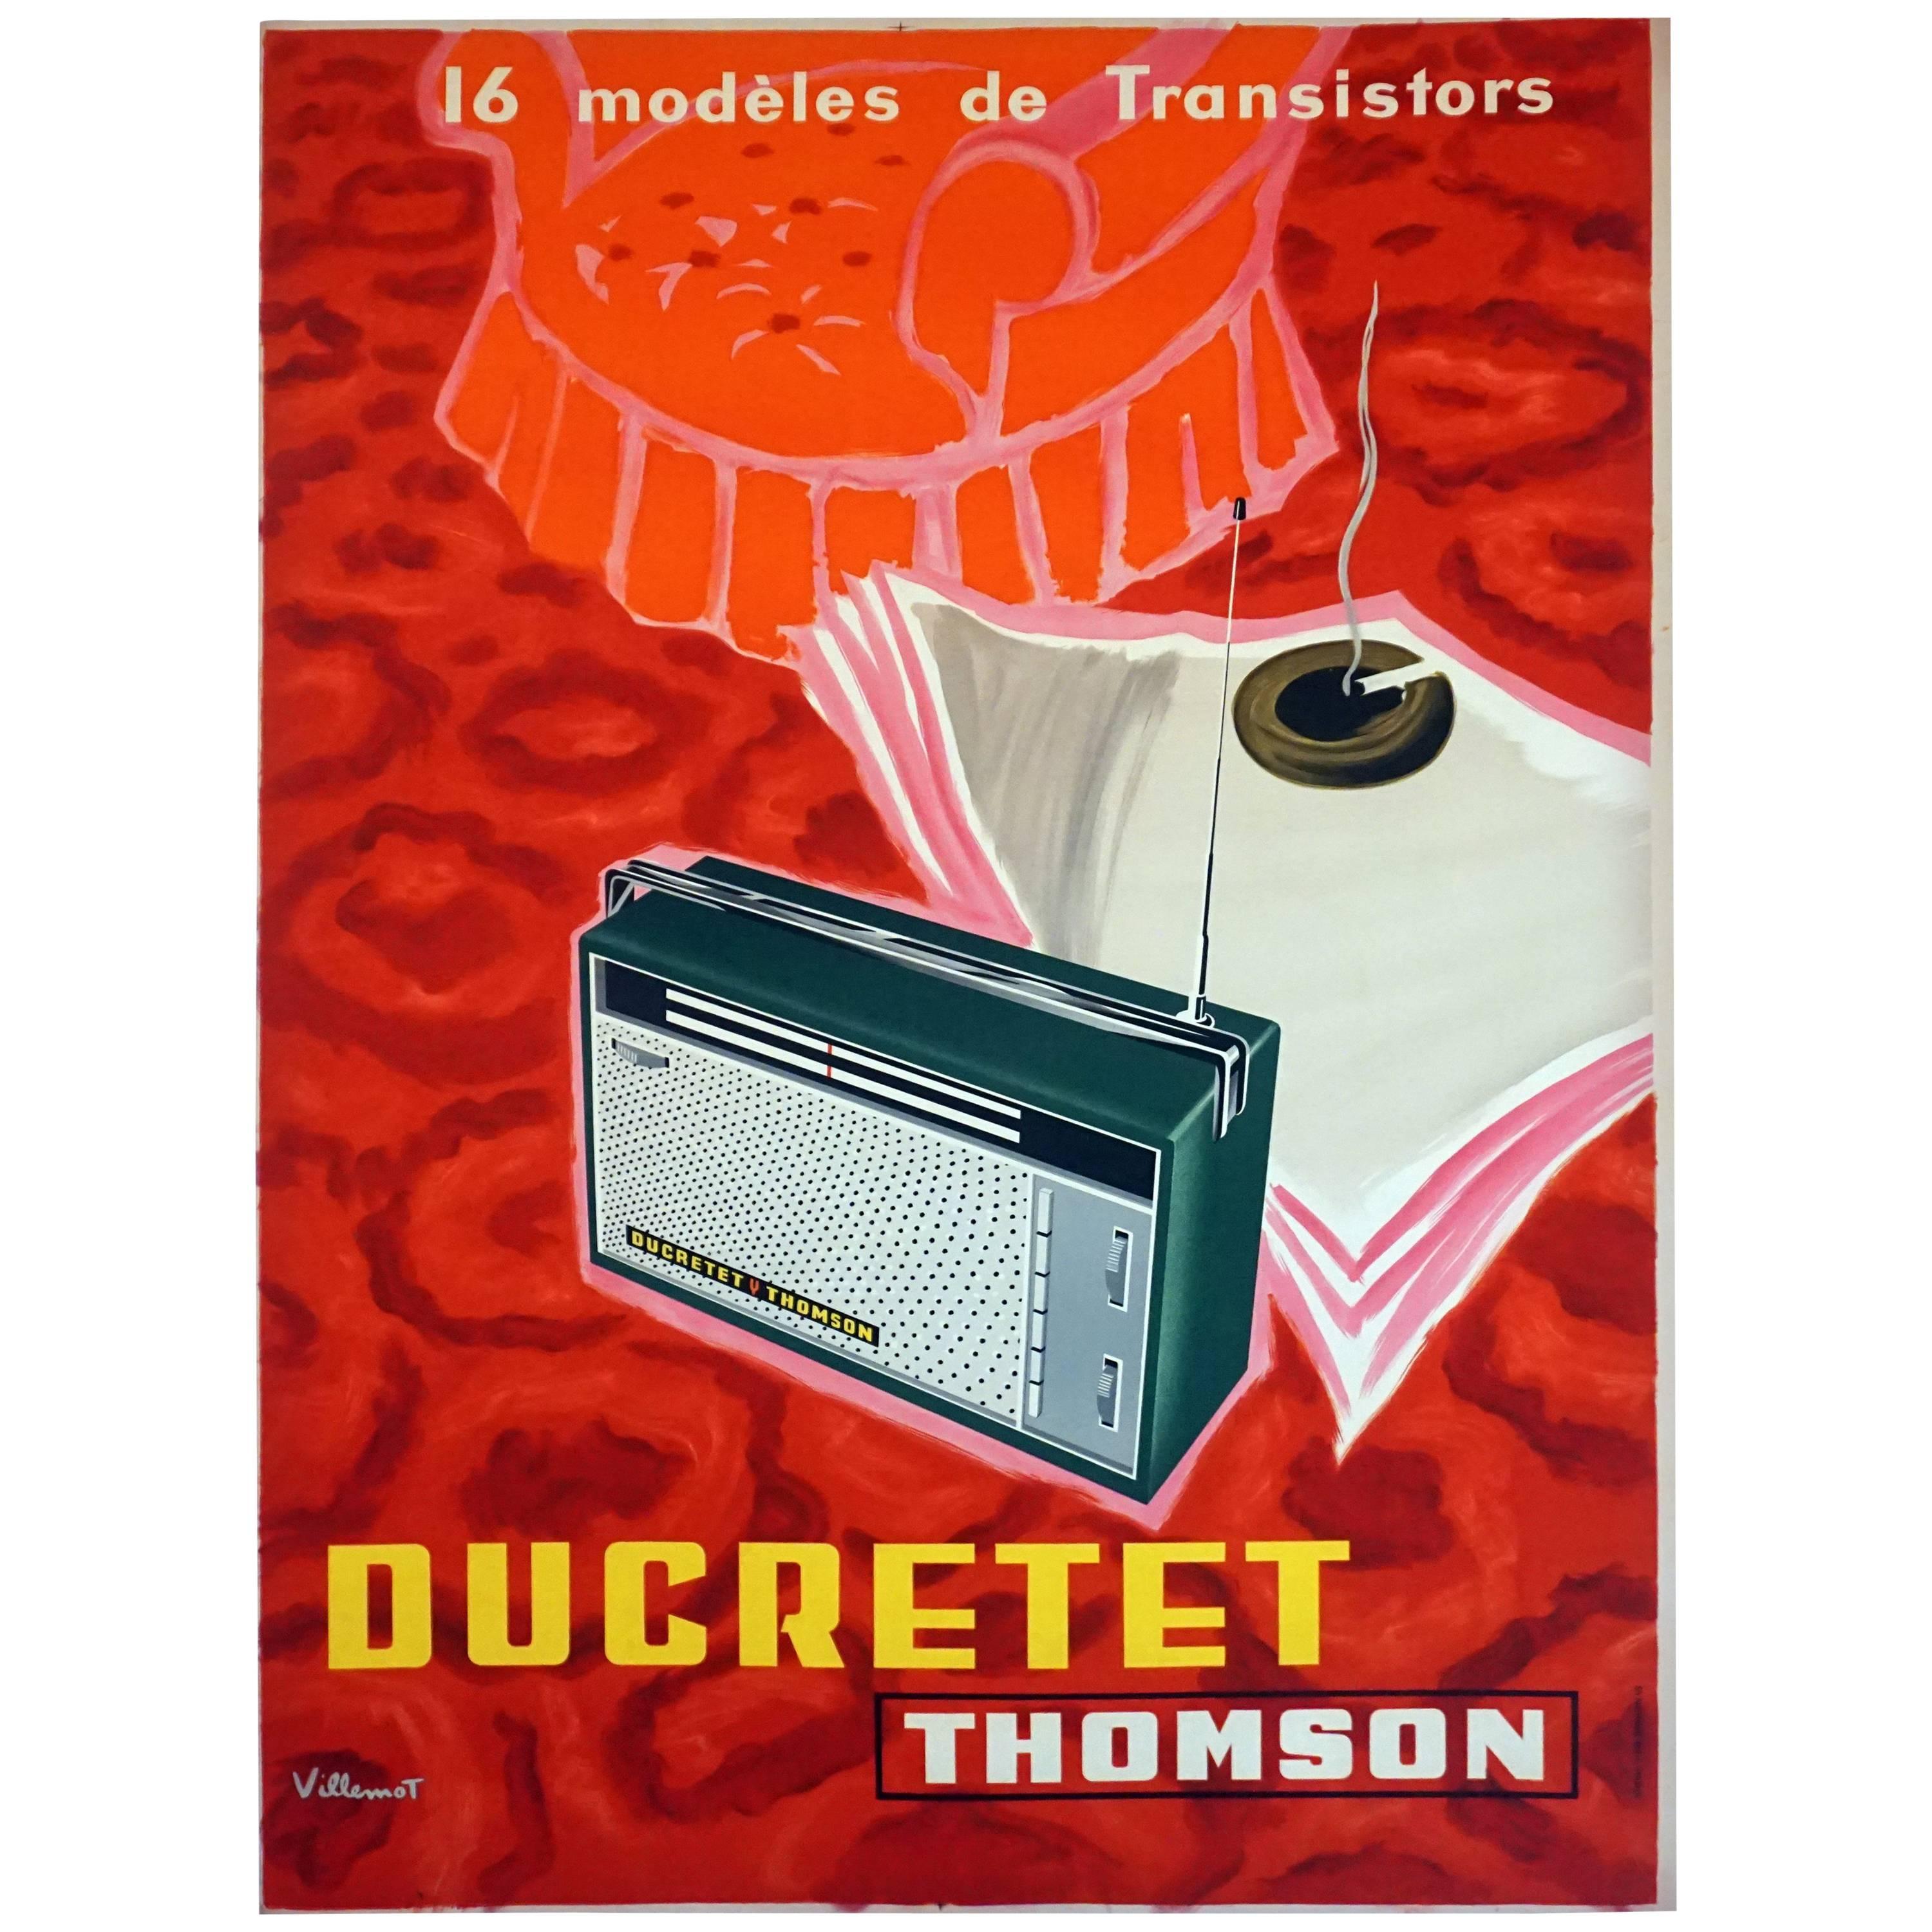 French Midcentury Radio Poster for 'Ducretet Thomson' by Modern Artist Villemot For Sale